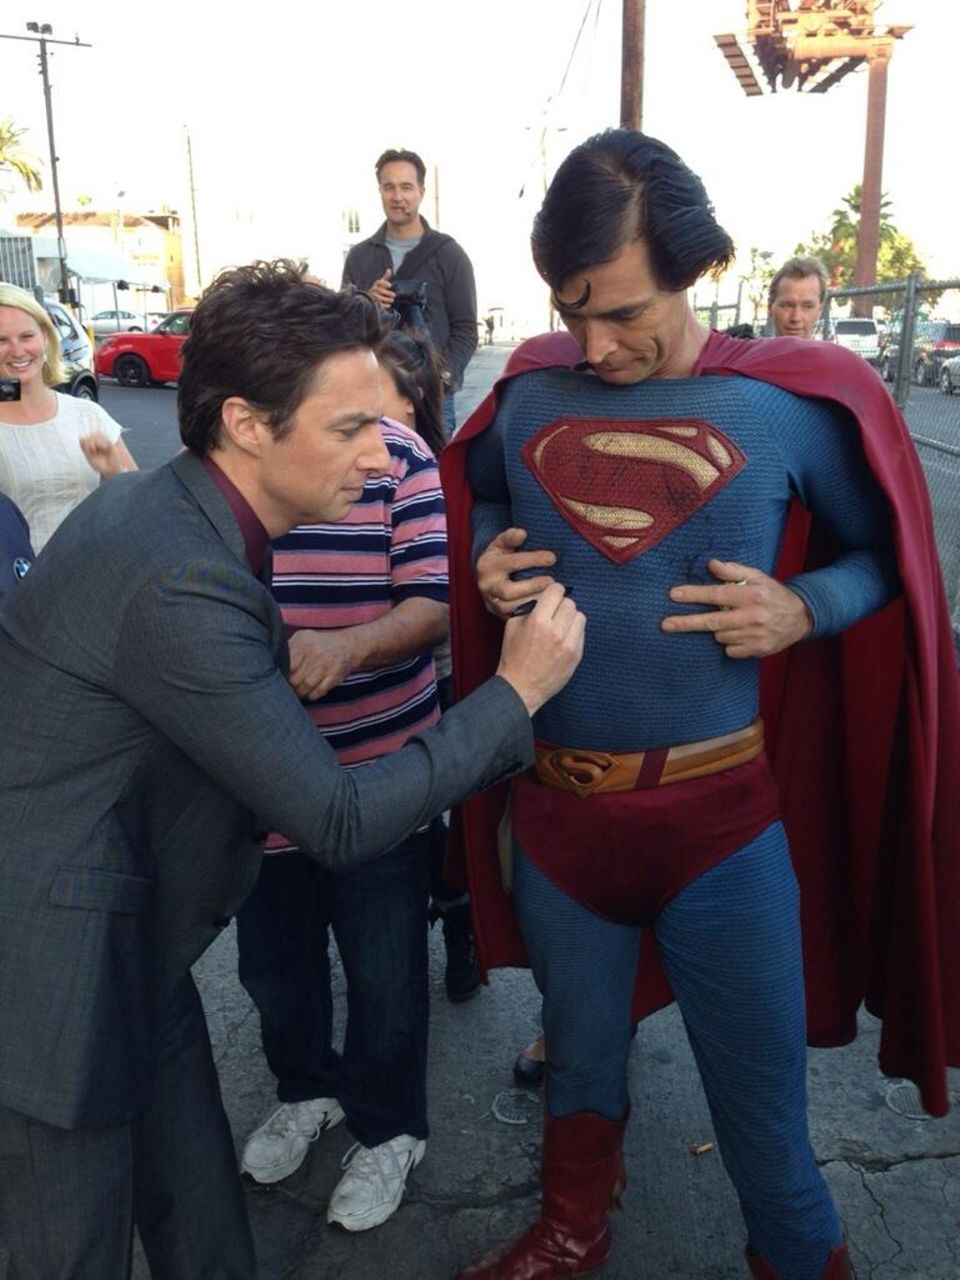 Zach Braff hinterlässt auf dem Superman-Anzug eines Fans seine Unterschrift.